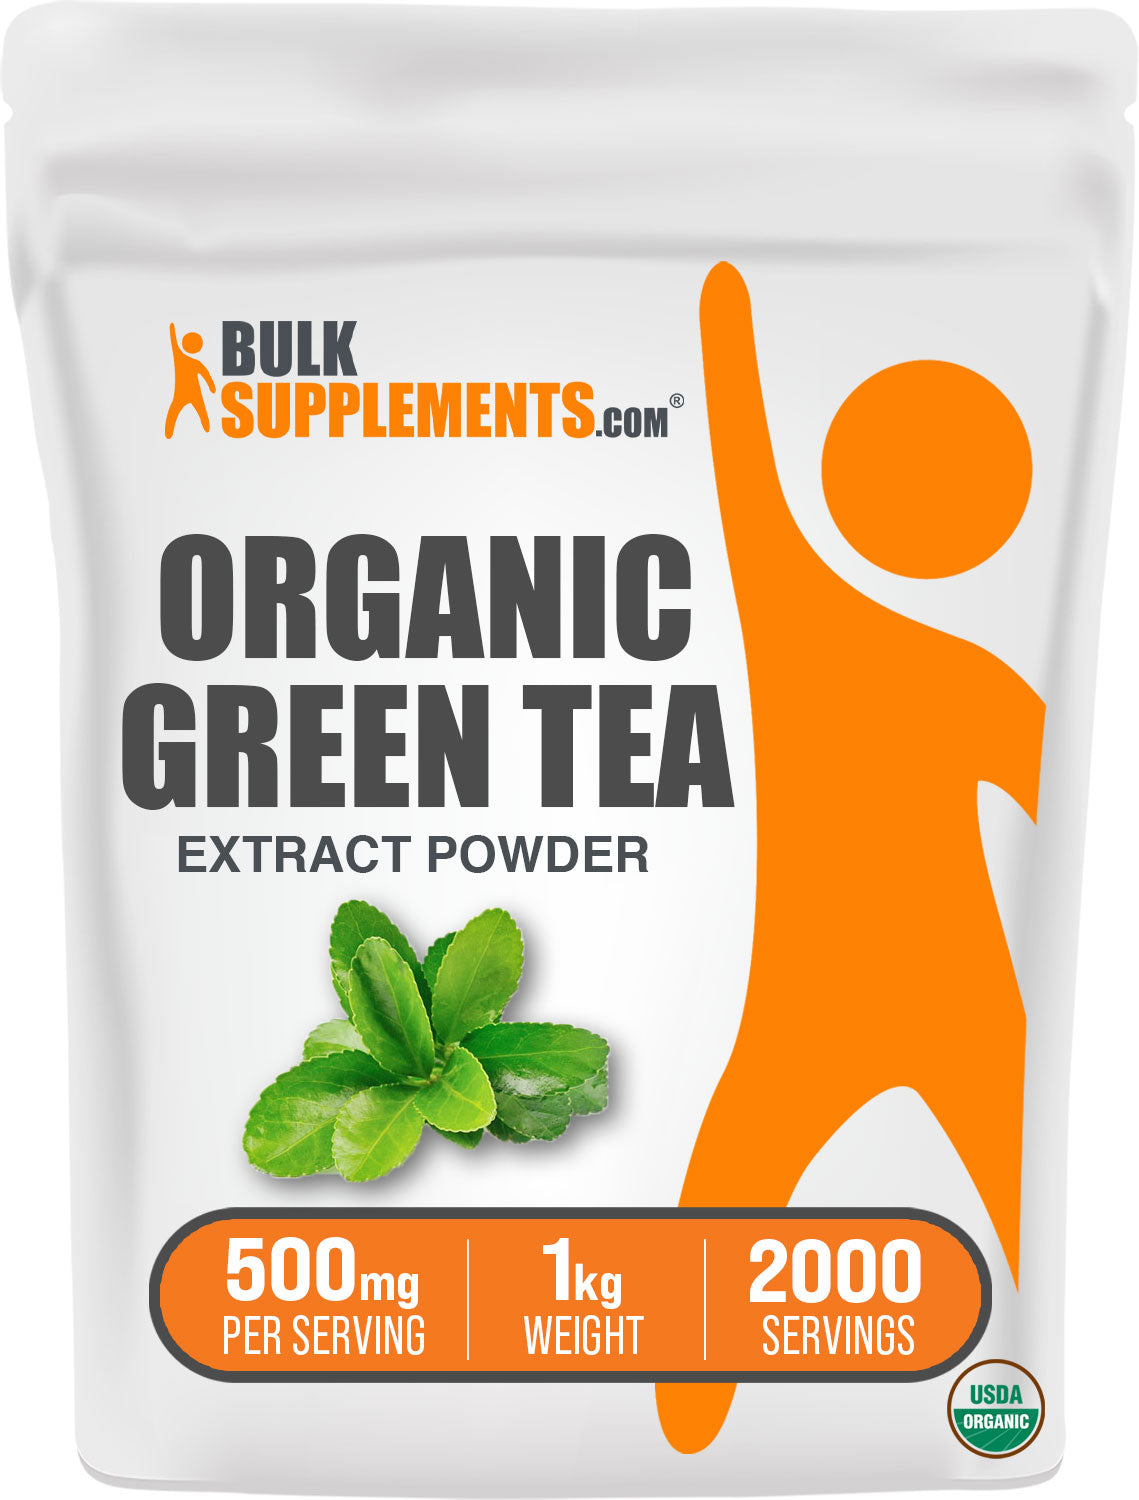 BulkSupplements.com Organic green tea extract powder 1kg bag